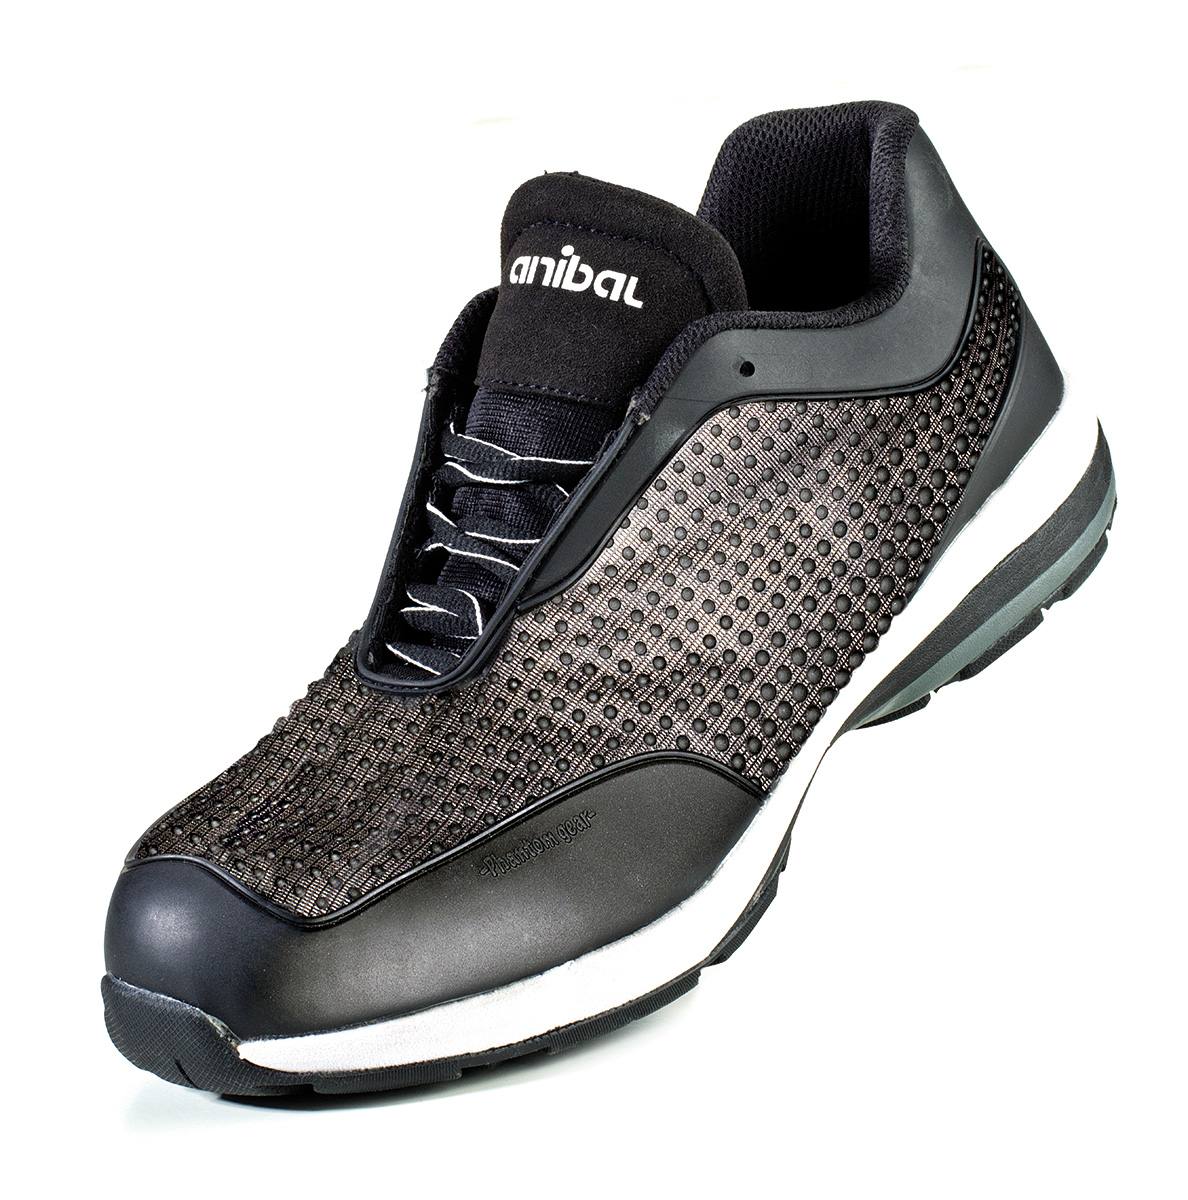 1688-ZPH Calzado de Seguridad Sporty Zapato mod. “OXILOS”. Zapato microfibra con tecnología Phantom de Alta Visibilidad en S1P. Suela de Poliuretano doble densidad SRC.